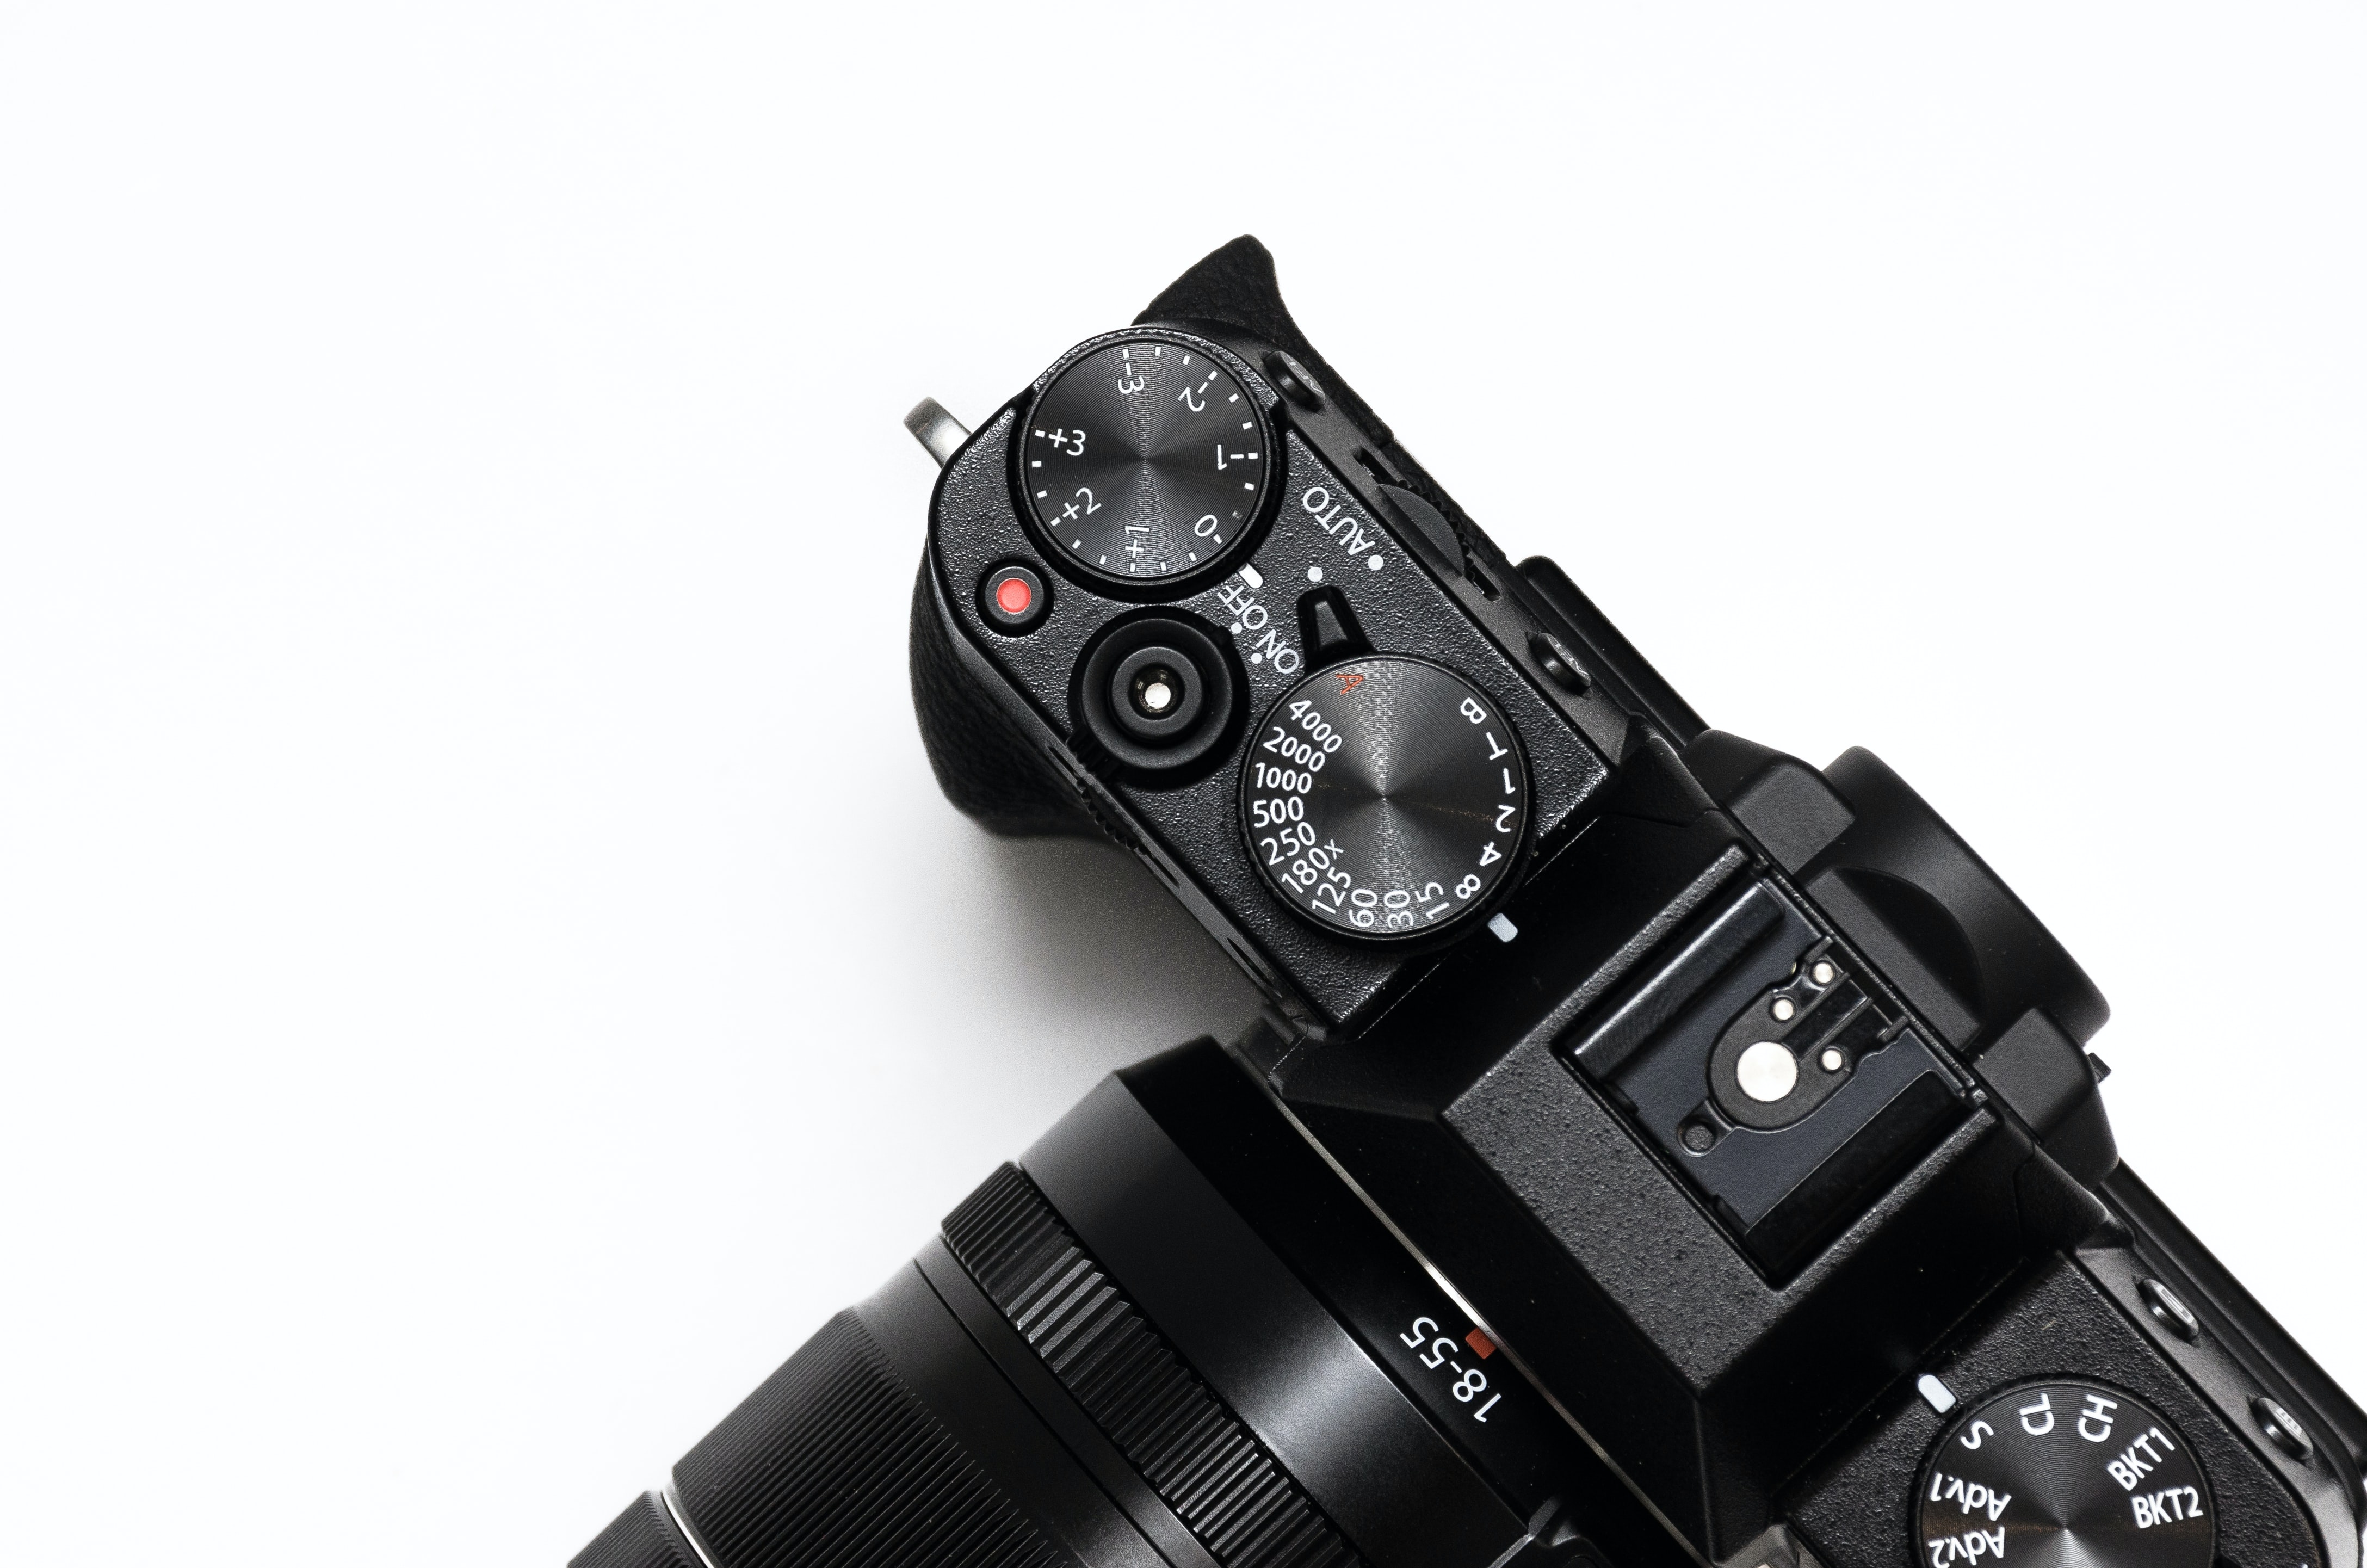 close up, top view of a Fuji mirrorless camera.